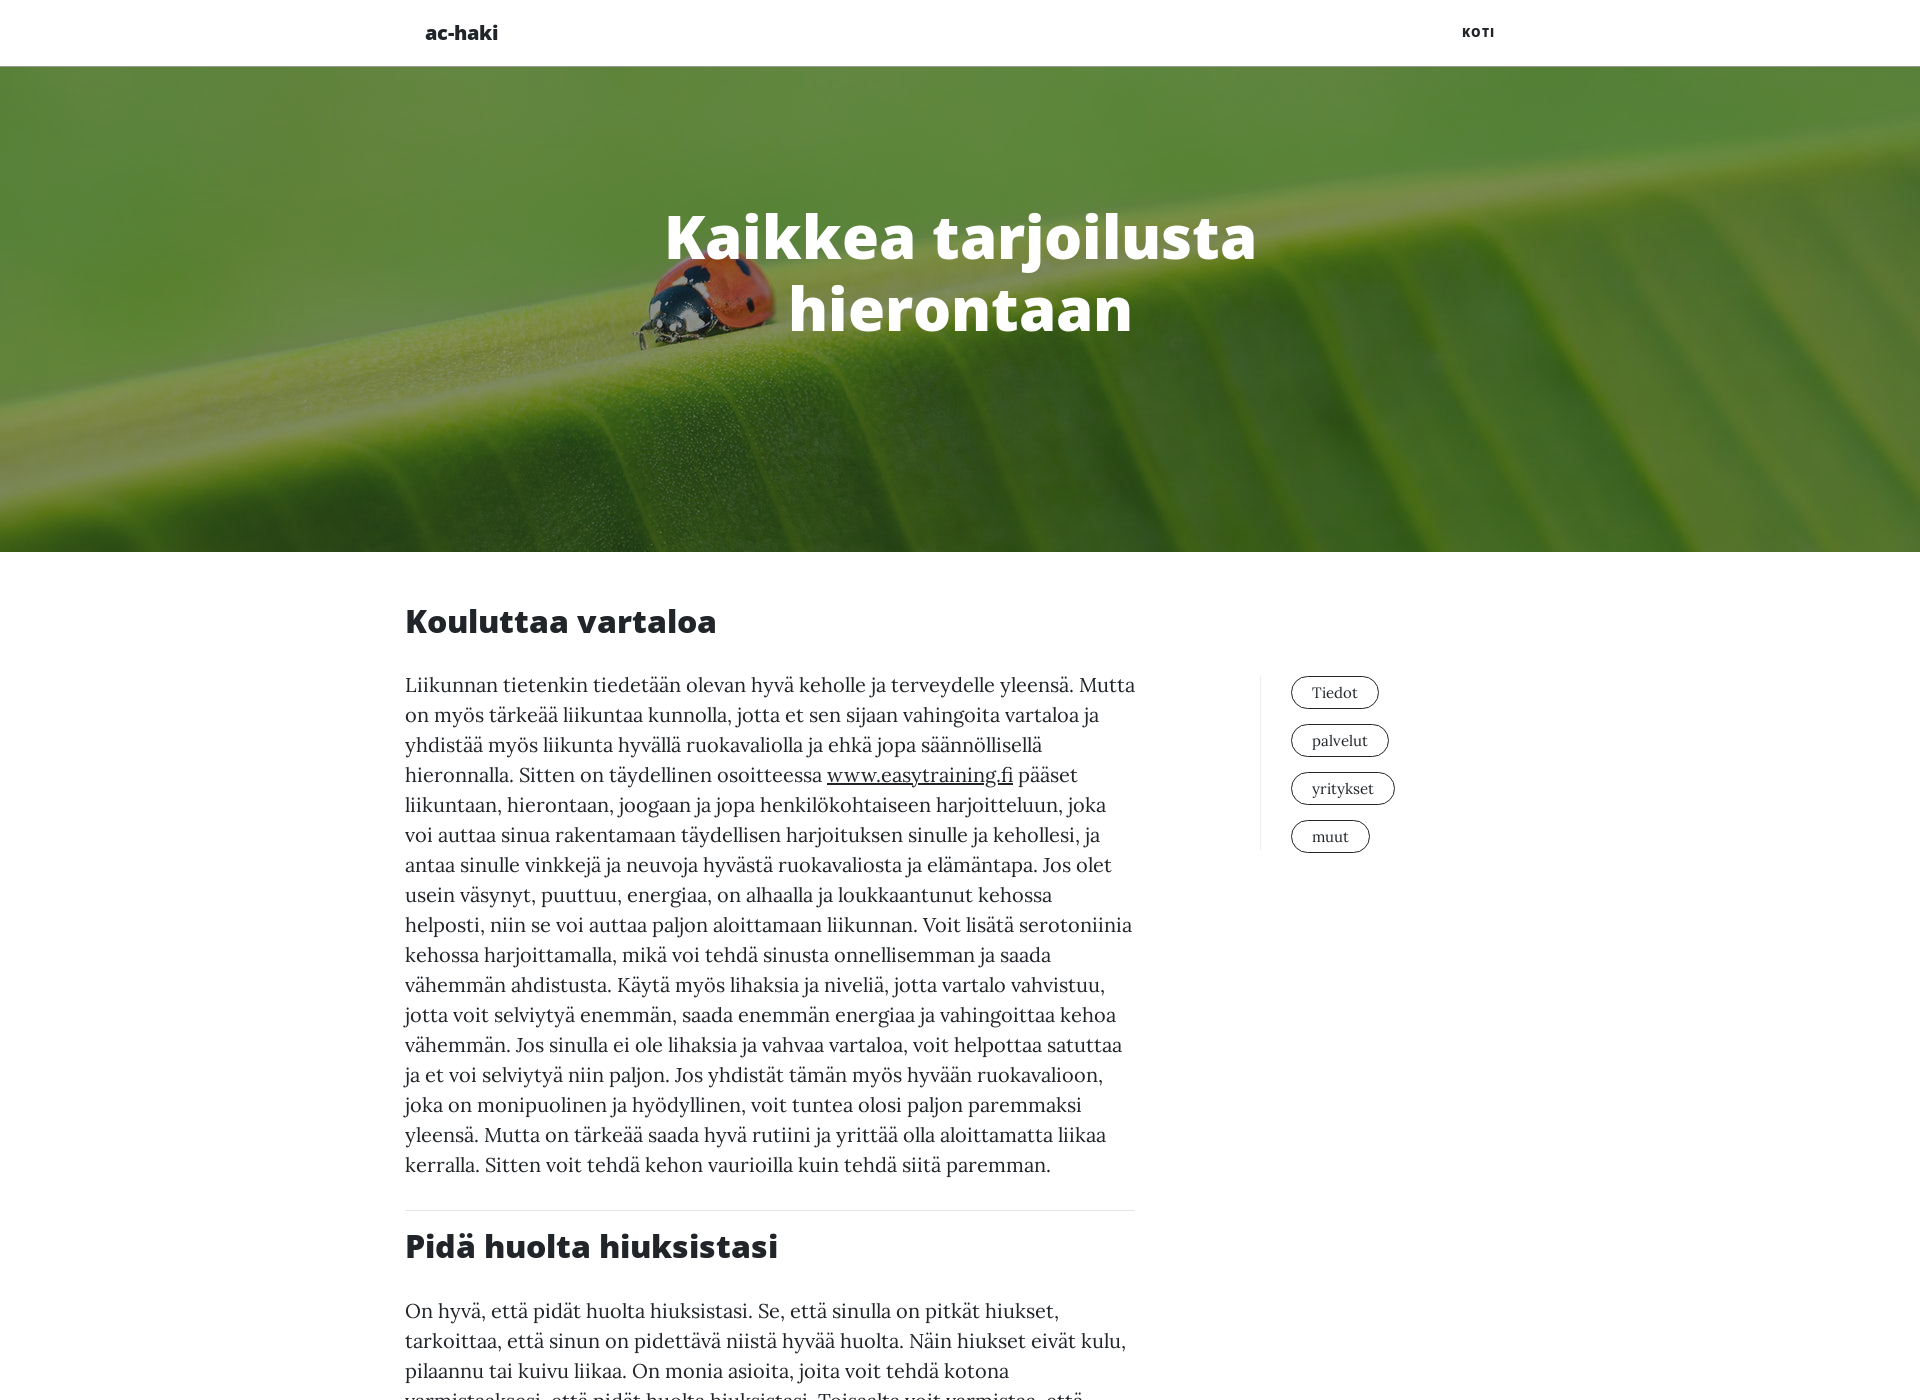 Näyttökuva ac-haki.fi